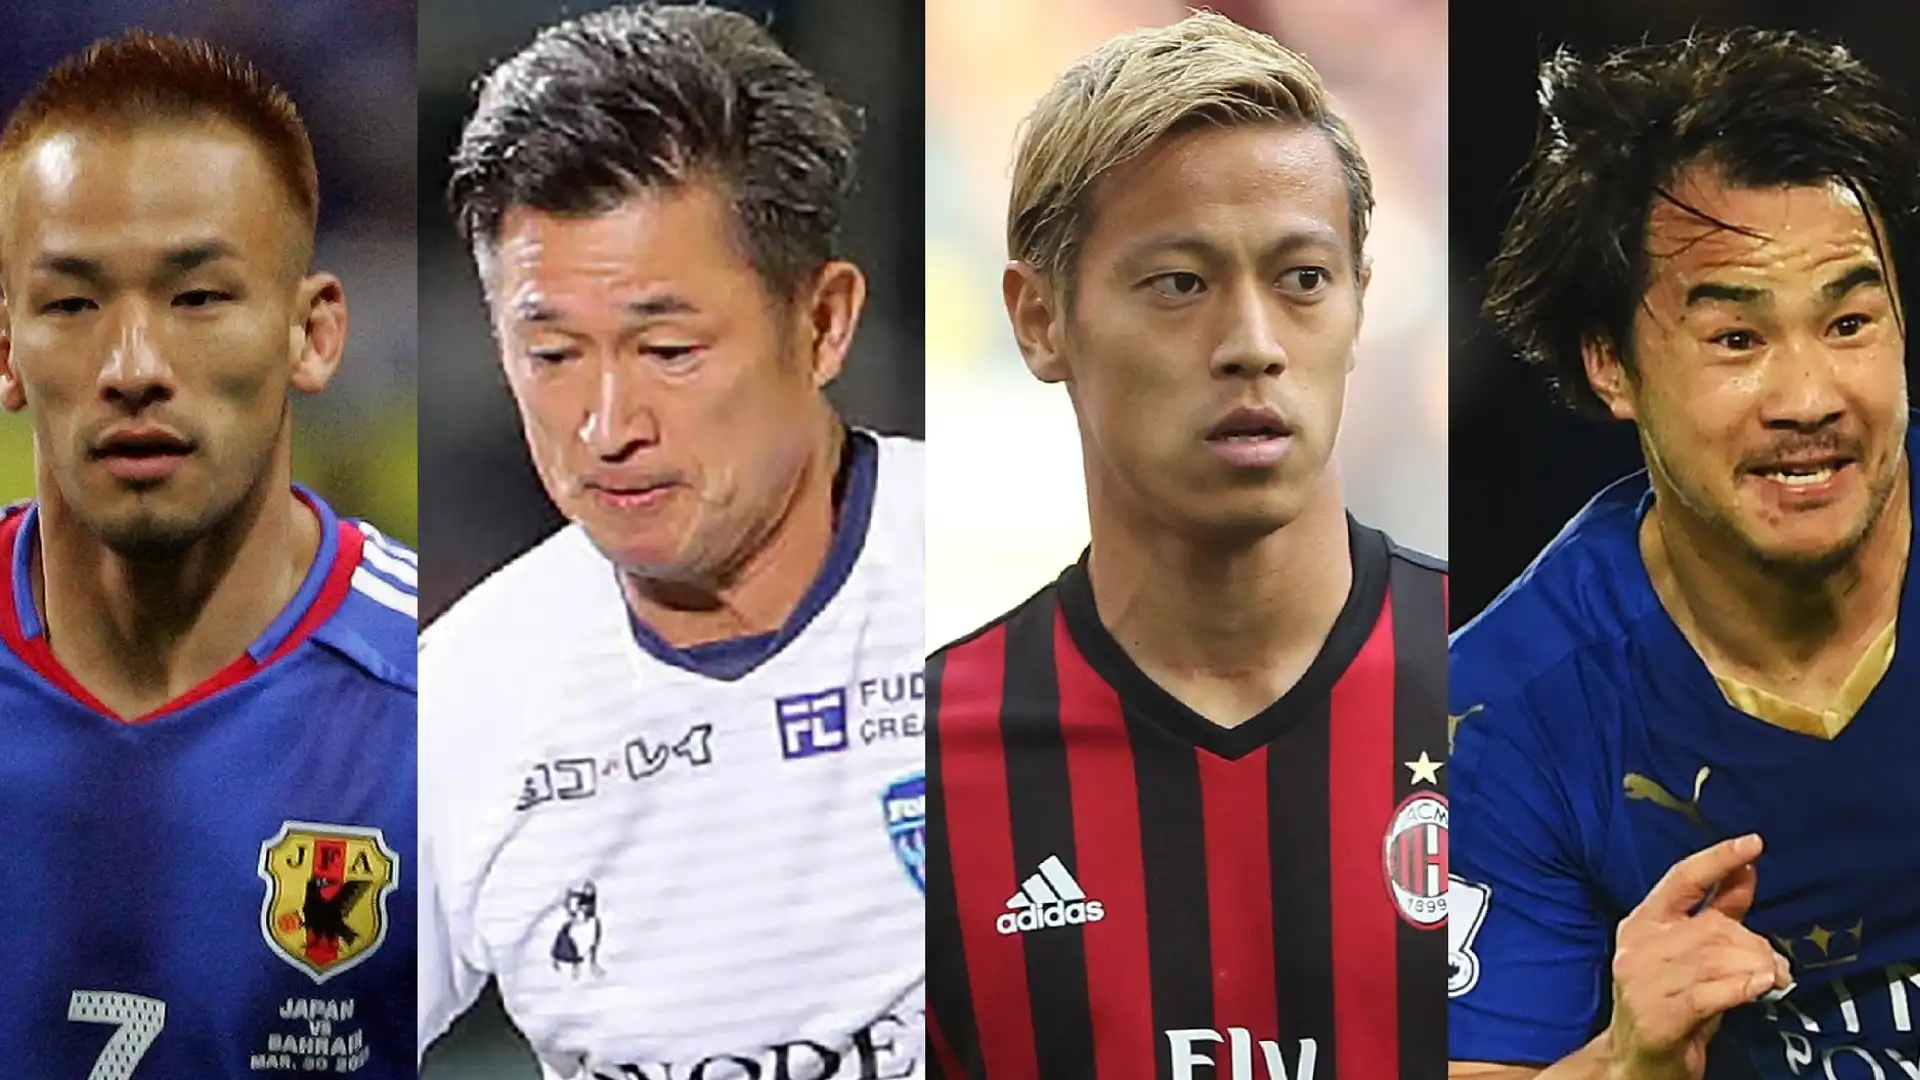 La classifica dei giocatori di calcio giapponesi più ricchi del pianeta.